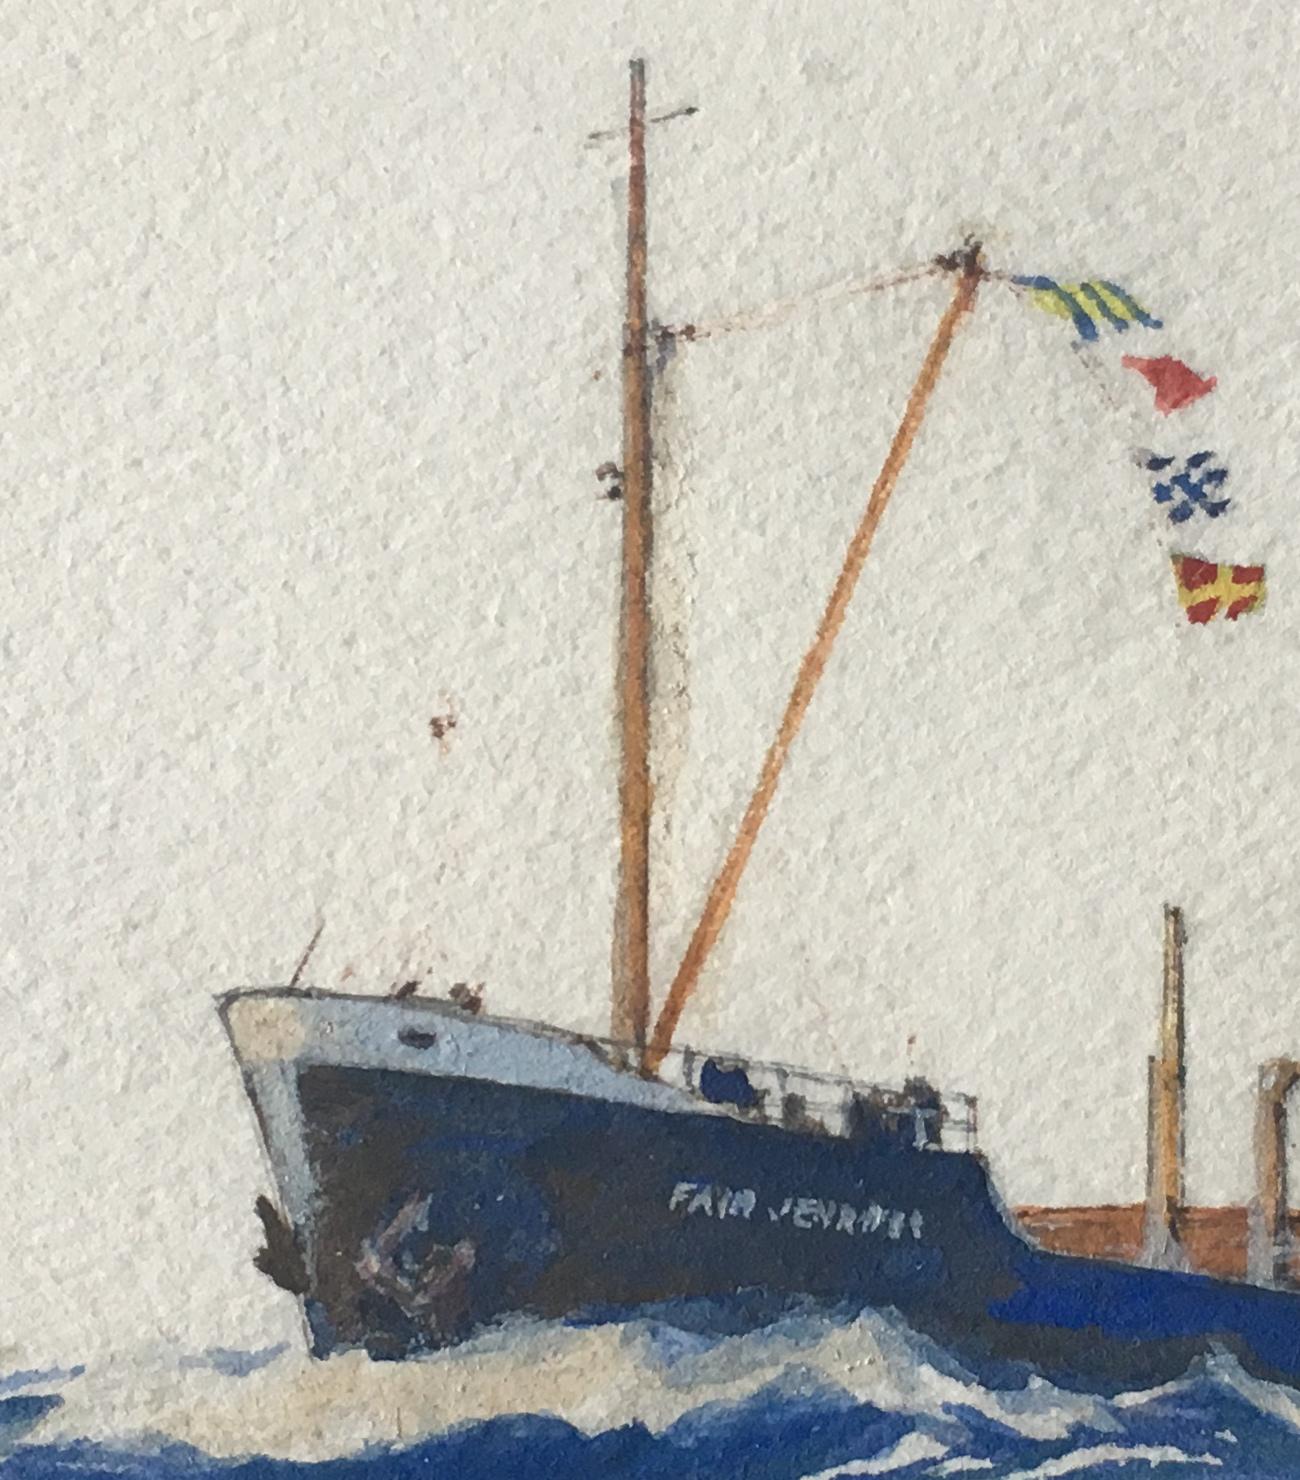 Laurence Dunn Fair Jennier painting maritime art ship boat Christmas Card wife 3